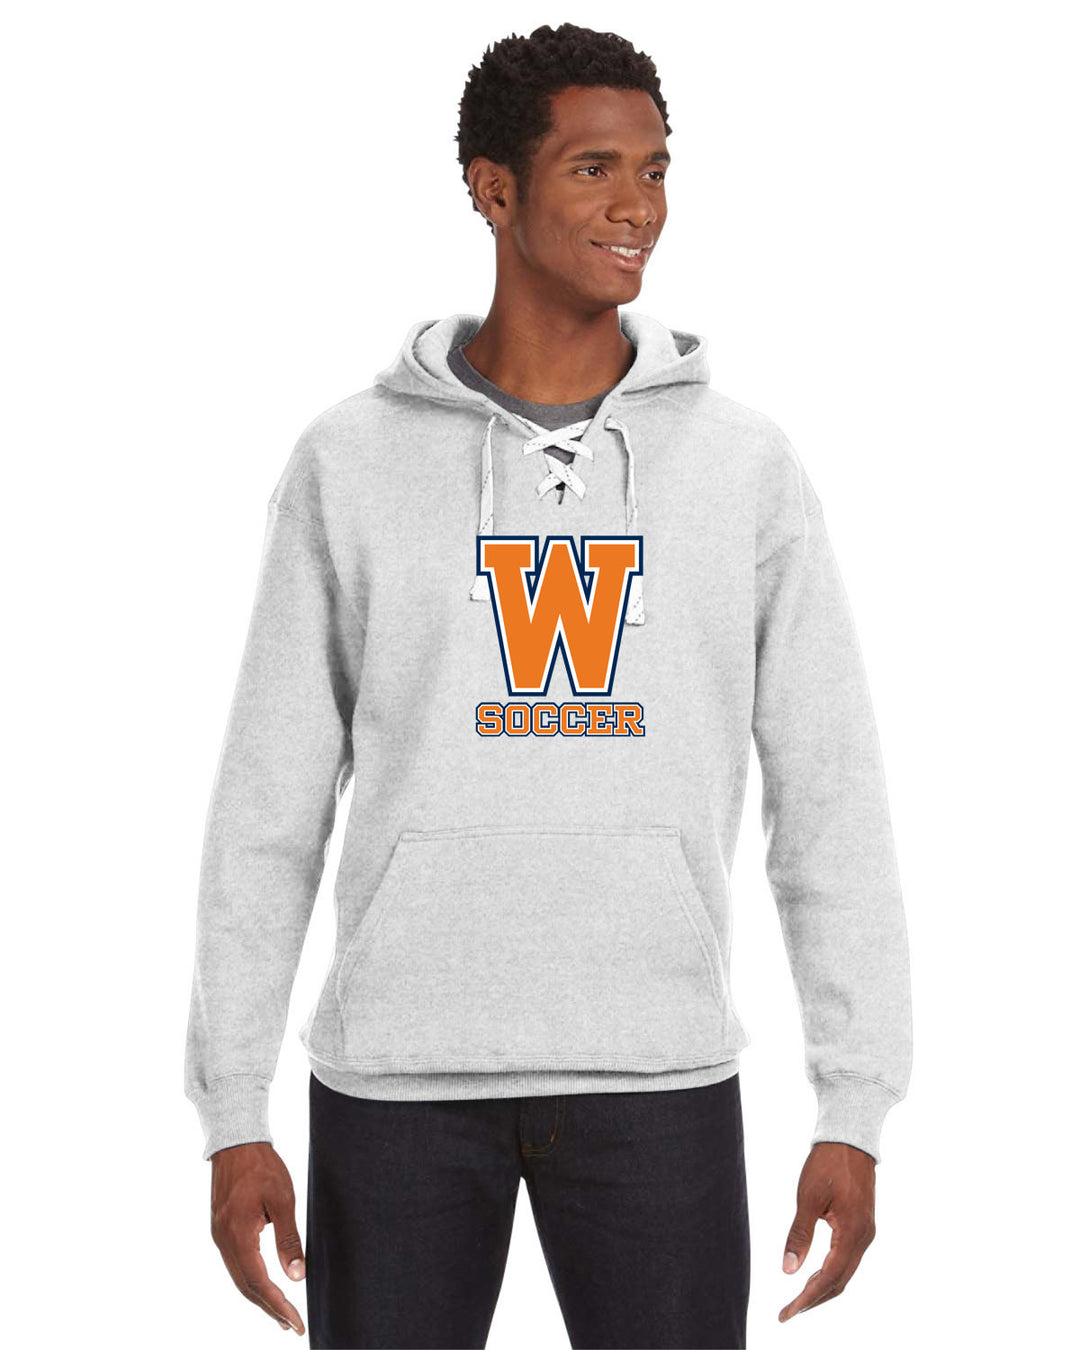 Walpole Boys Soccer Sport Lace Hooded Sweatshirt (JA8830)